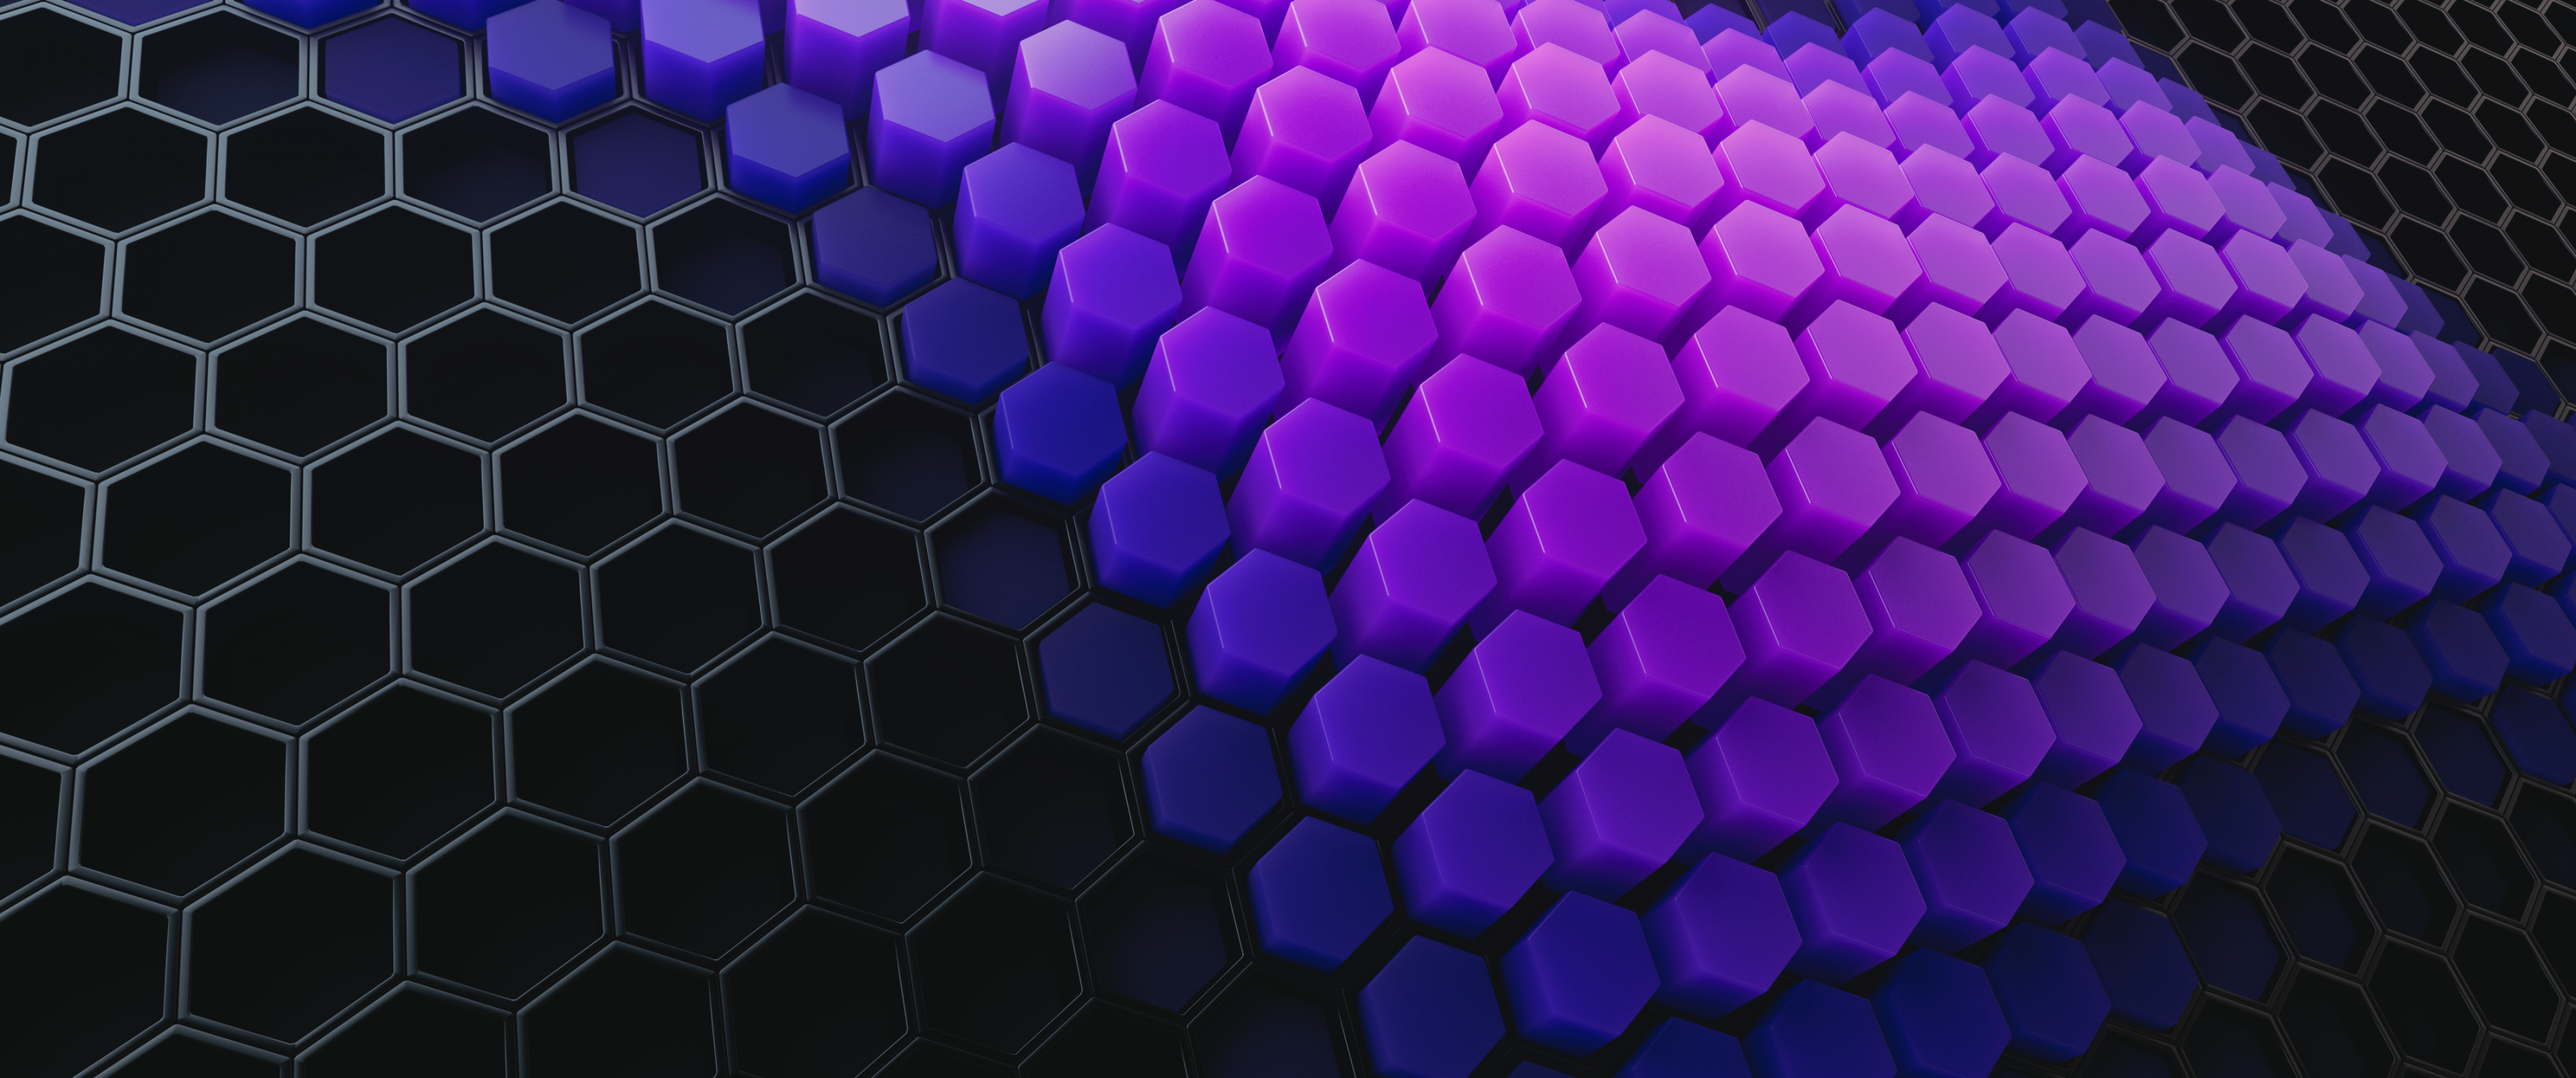 Hexagons Wallpaper 4K, Patterns, Abstract, #2277